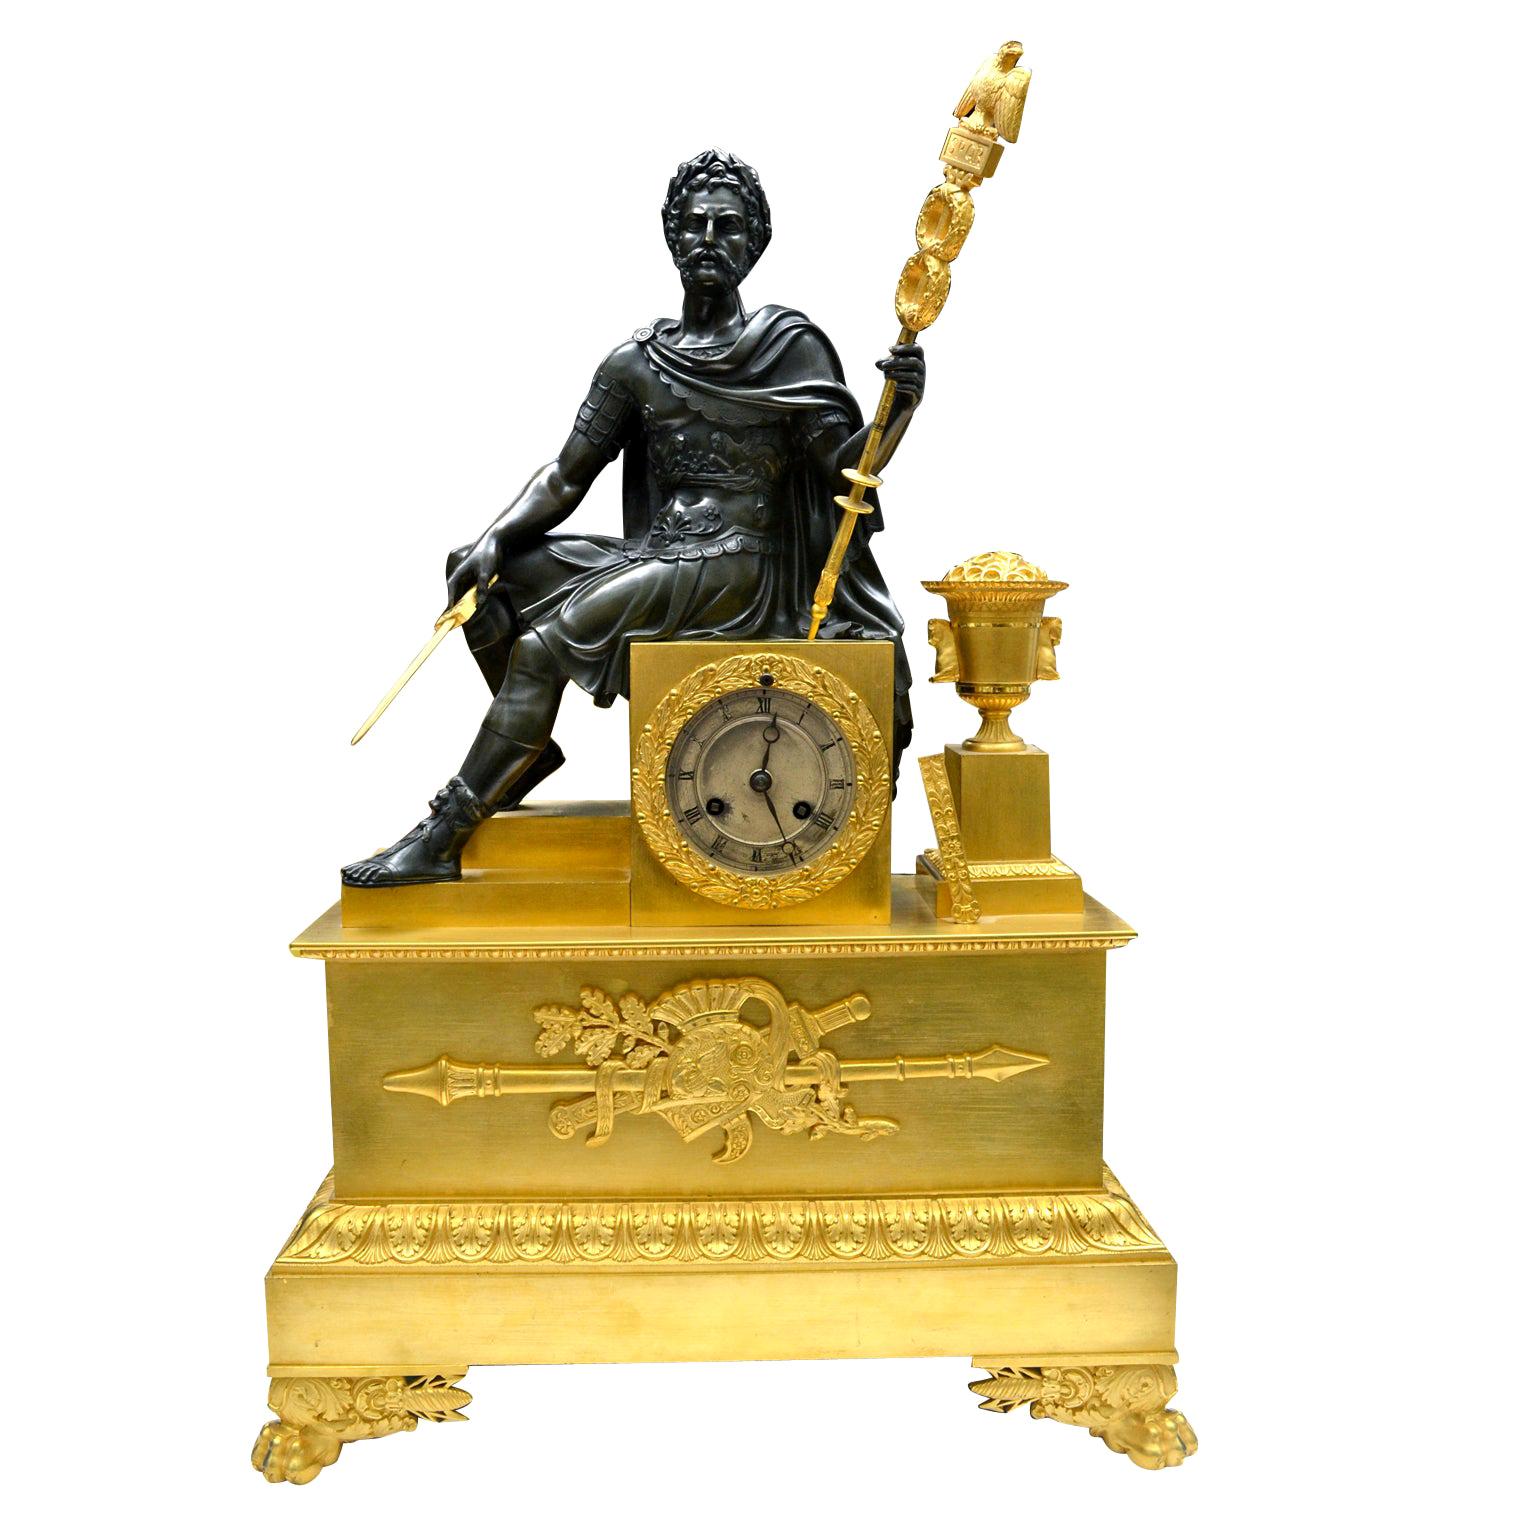 Français  Horloge Empire en bronze doré et patiné représentant un empereur romain assis